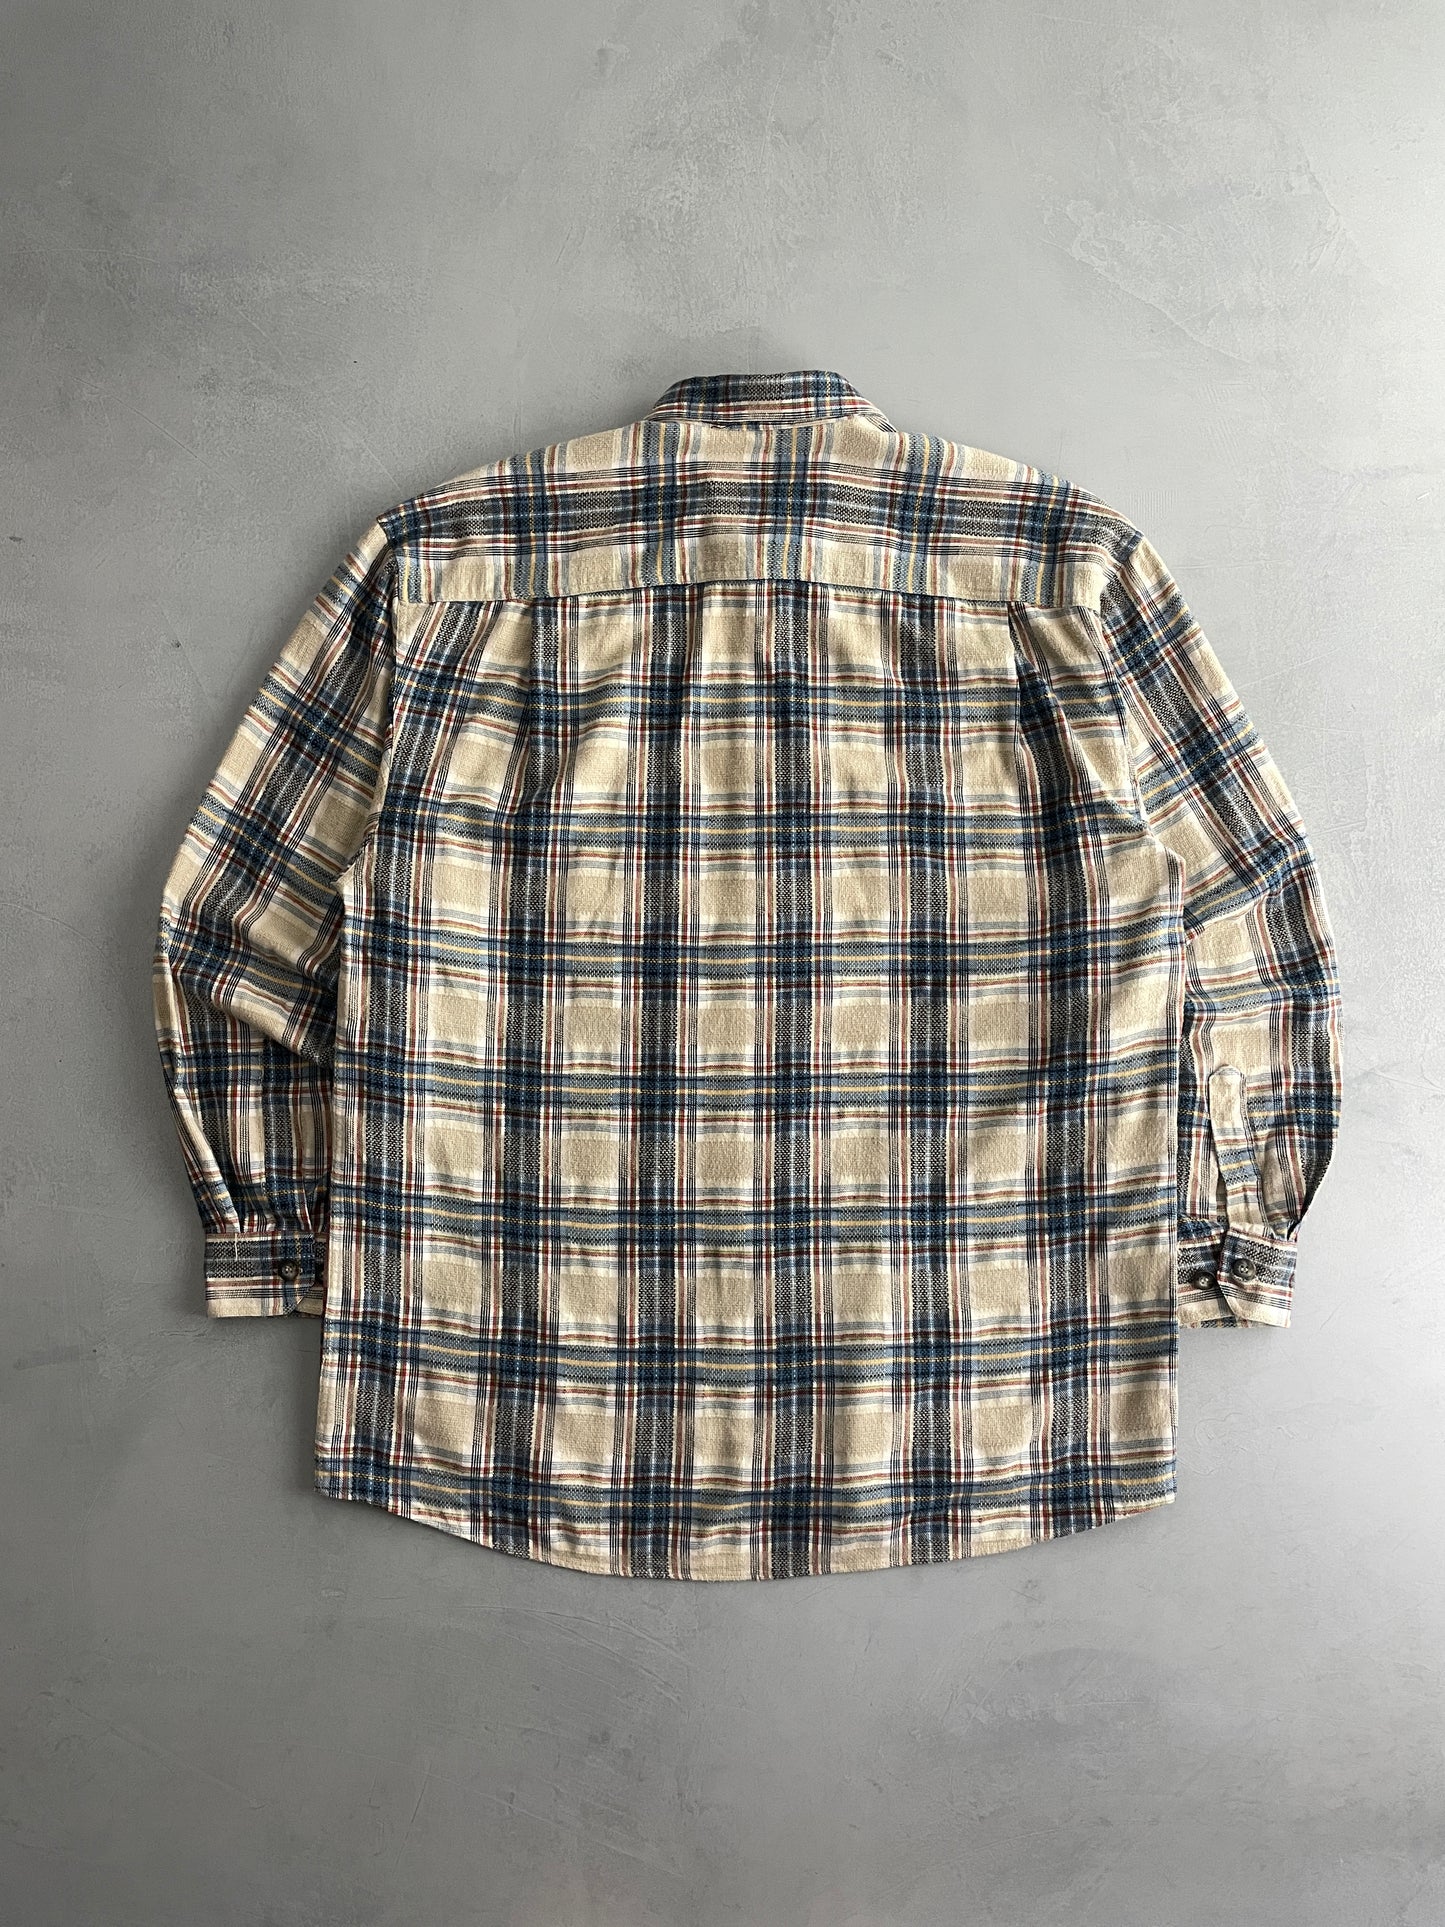 JacTissot Flannel Shirt [XL]